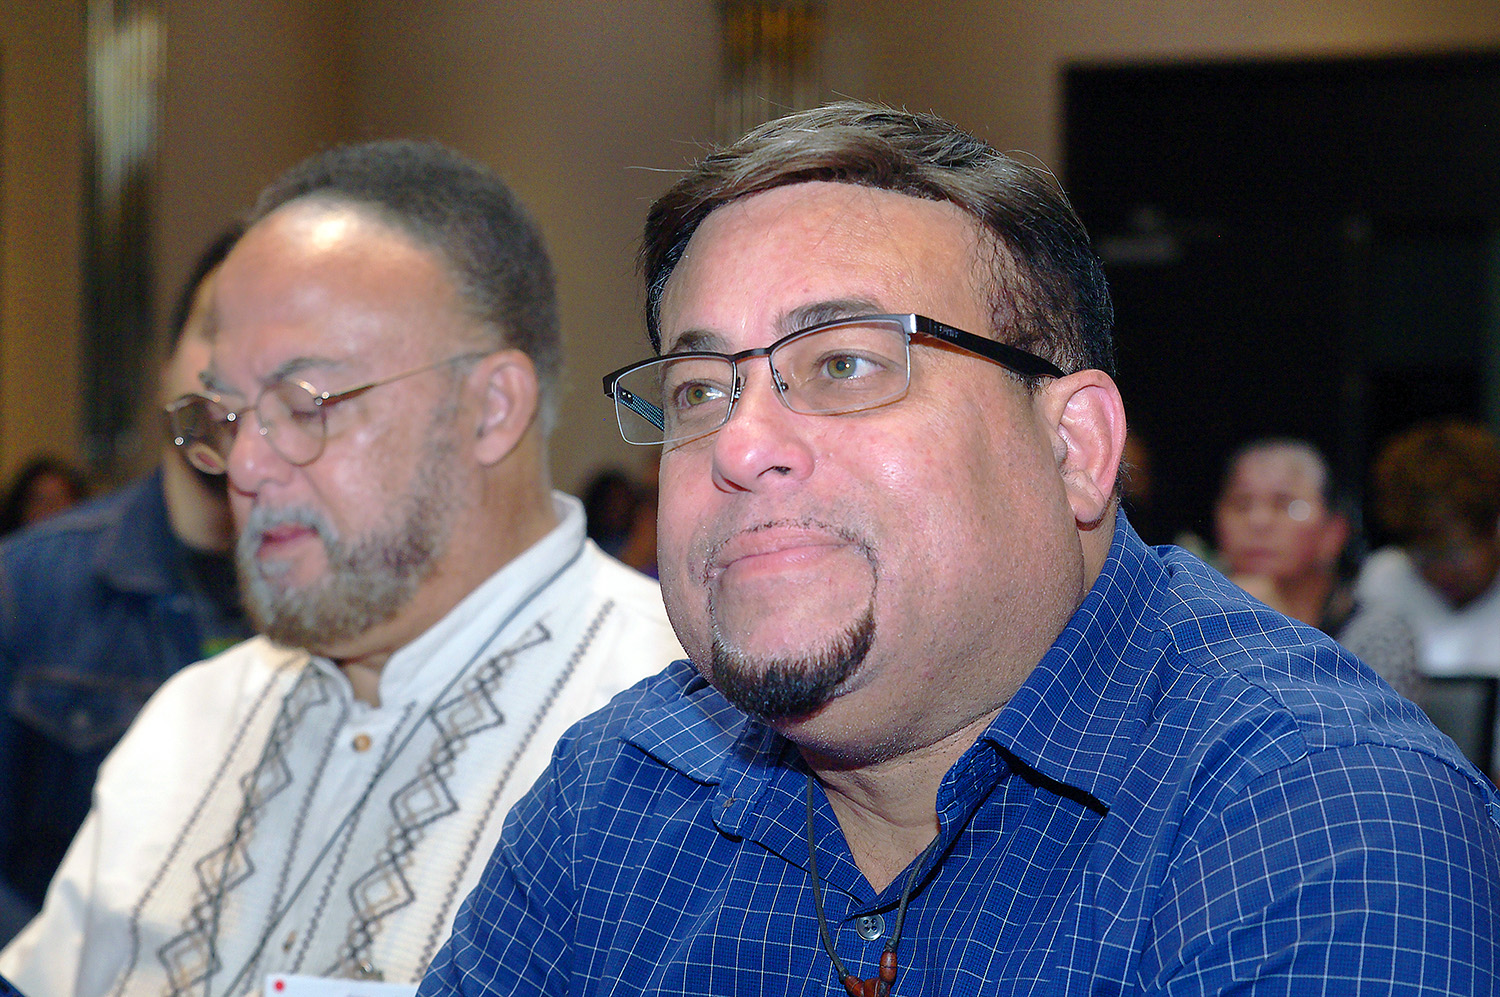 Os Reverendos Irvin e Edwin Cotto, Diretor de Desenvolvimento Congregacional da Conferência Leste da Pensilvânia e Pastor da IMU Cristo na Conferência Anual da Flórida, respectivamente, são irmãos de sangue e líderes reconhecidos dentro da comunidade Metodista Unida Hispano-Latina. 